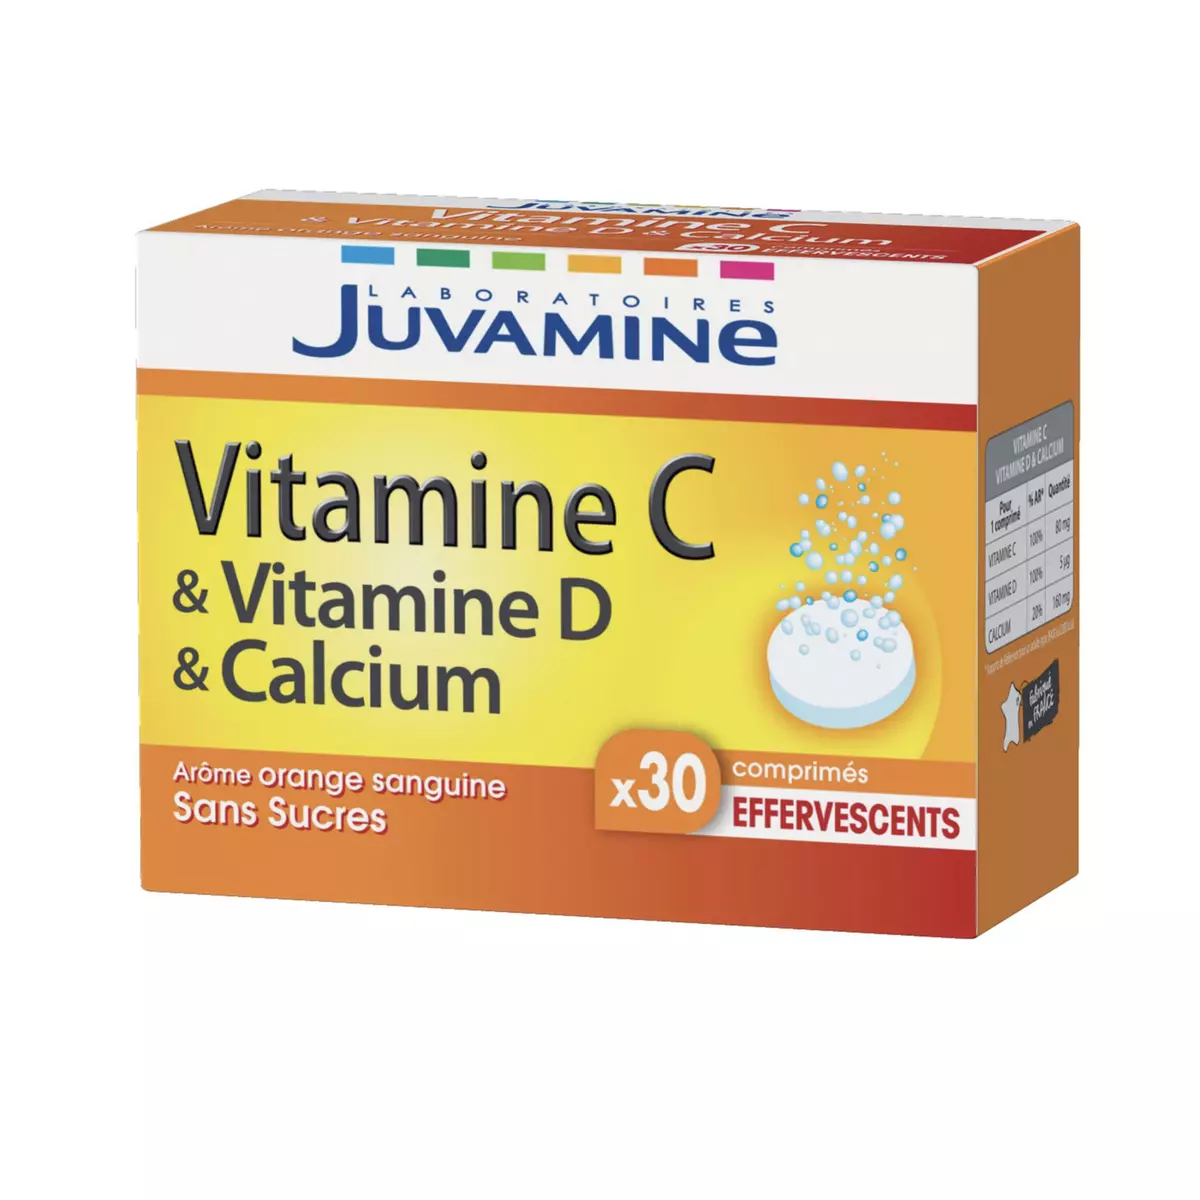 JUVAMINE Comprimés vitamine C & vitamine D & calcium arôme orange sanguine sans sucres 30 comprimés 77g